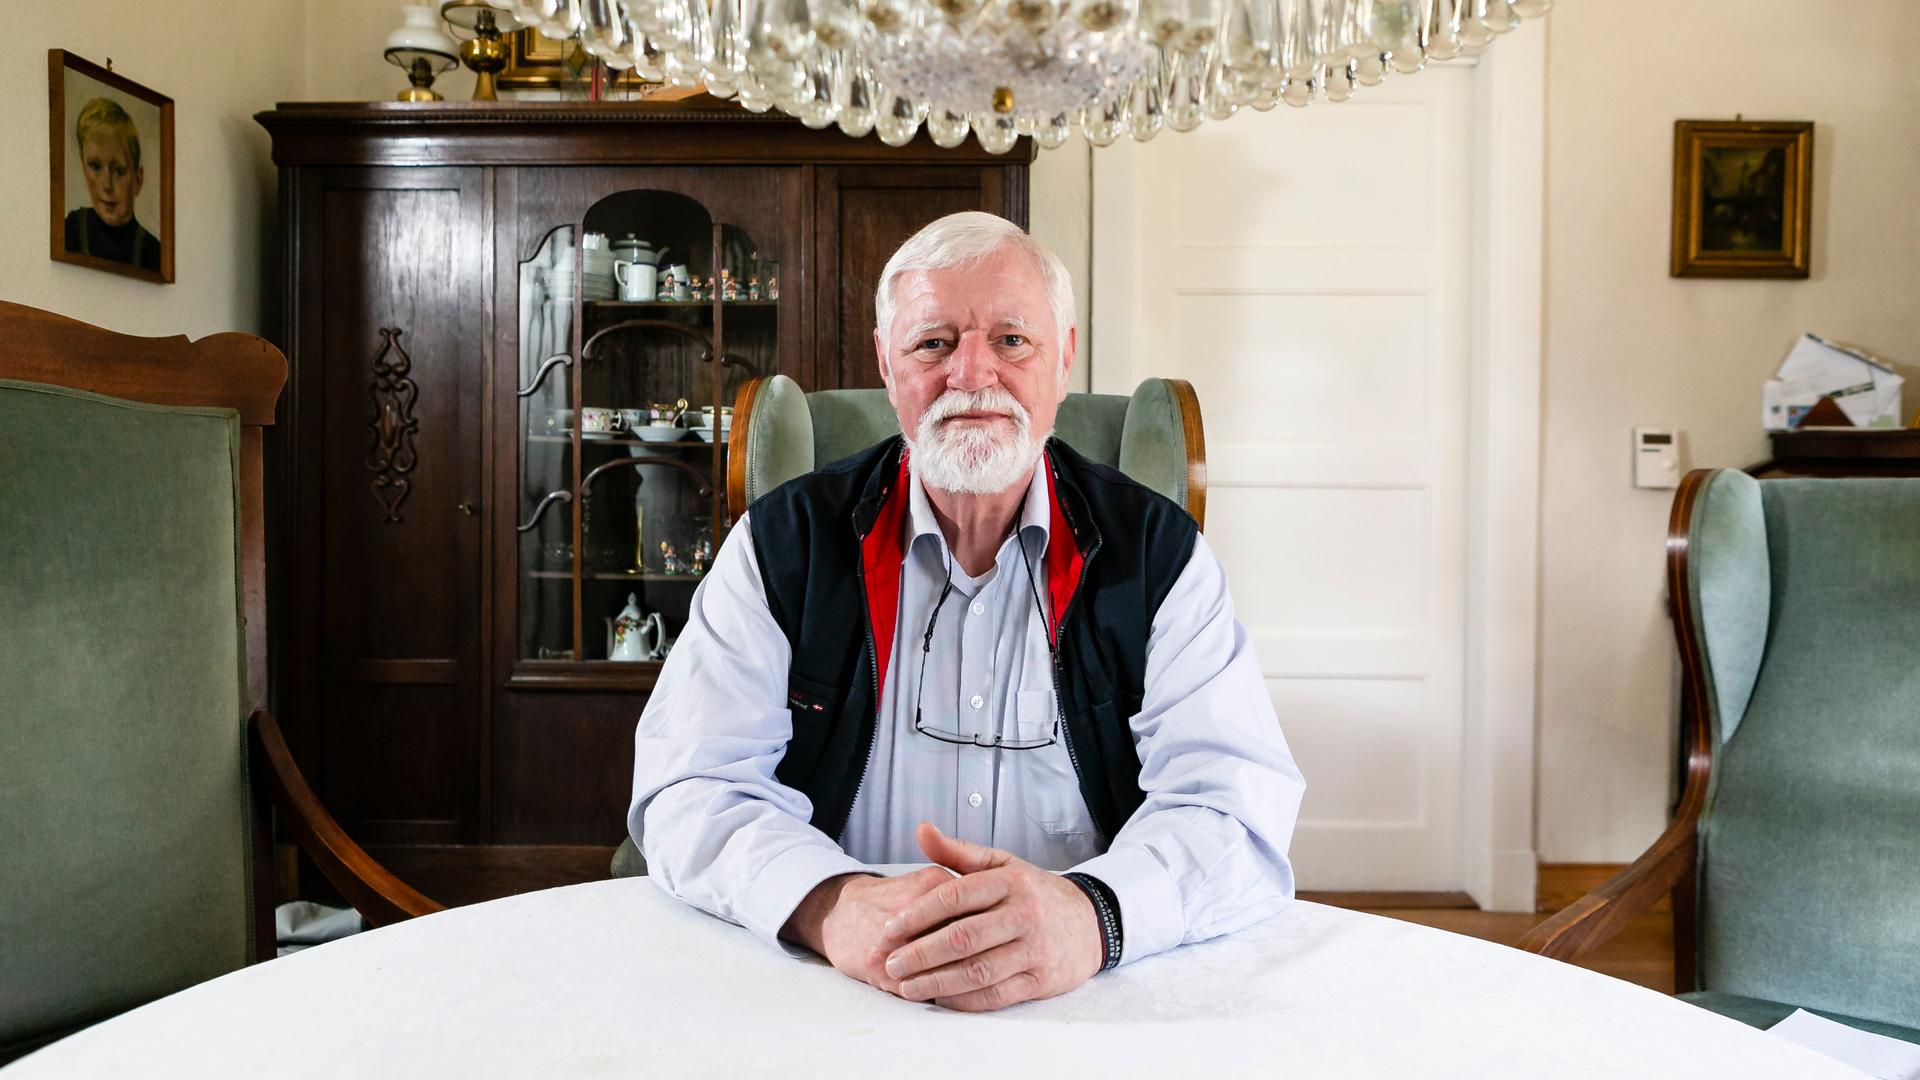 Bürgermeister-Macher Thies Thiessen sitzt auf einem Ohrensessel in seinem Wohnhaus. Er trägt weiße Haare und einen weißen Bart. Seine Hände liegen auf dem weißen Tisch. Über ihm sieht man einen Kronleuchter. Im Hintergrund erkennt man einen alten Schrank und zwe Gemälde.